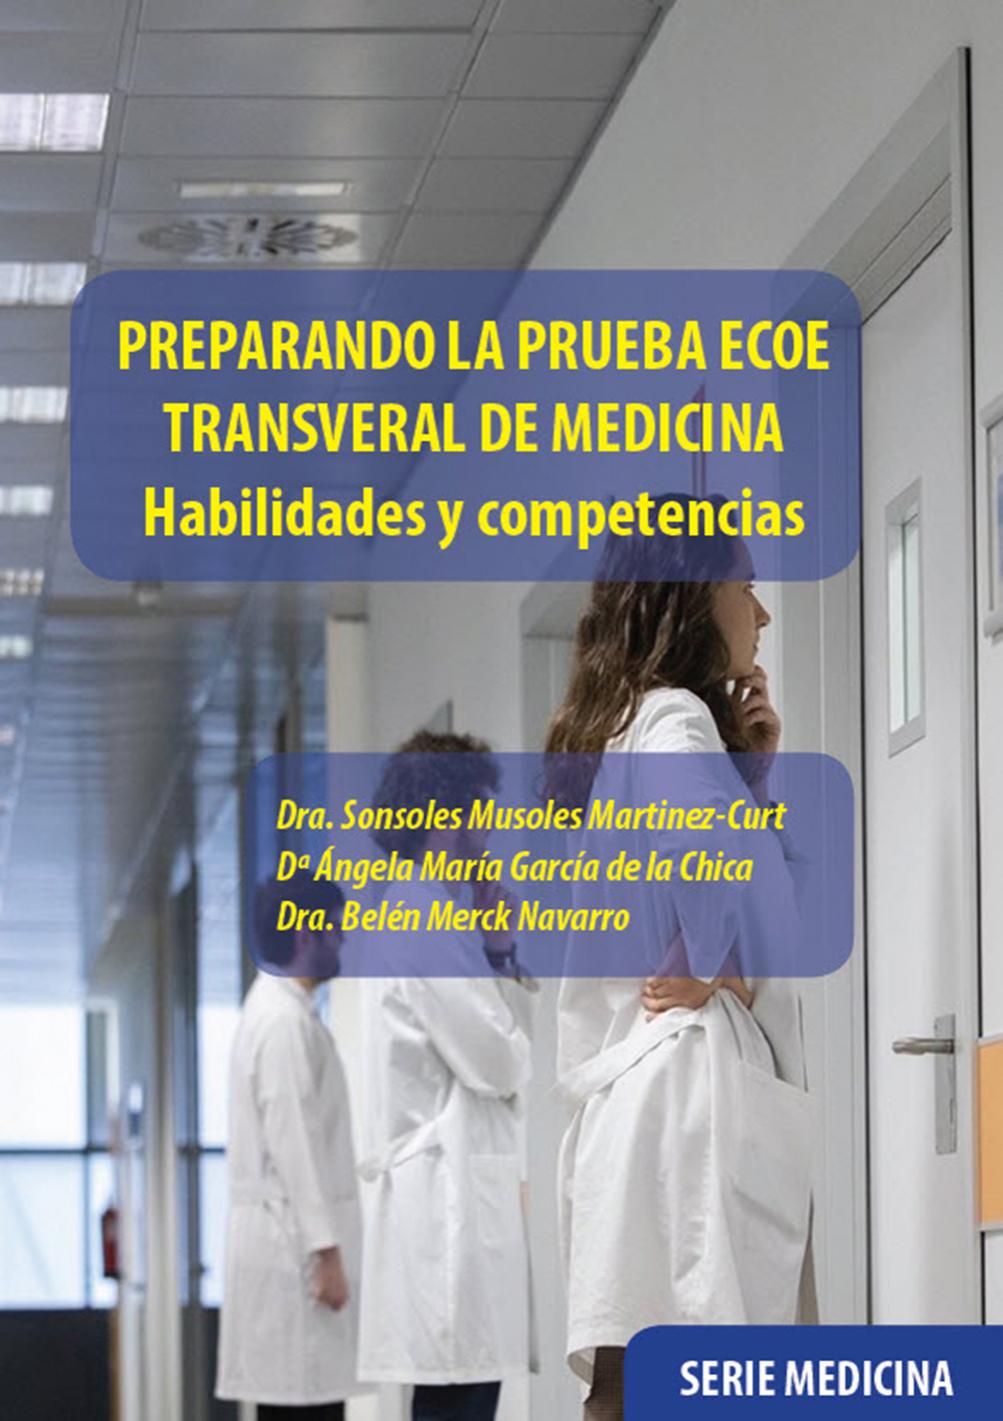 PREPARANDO LA PRUEBA ECOE TRANSVERAL DE MEDICINA. Habilidades y competencias.